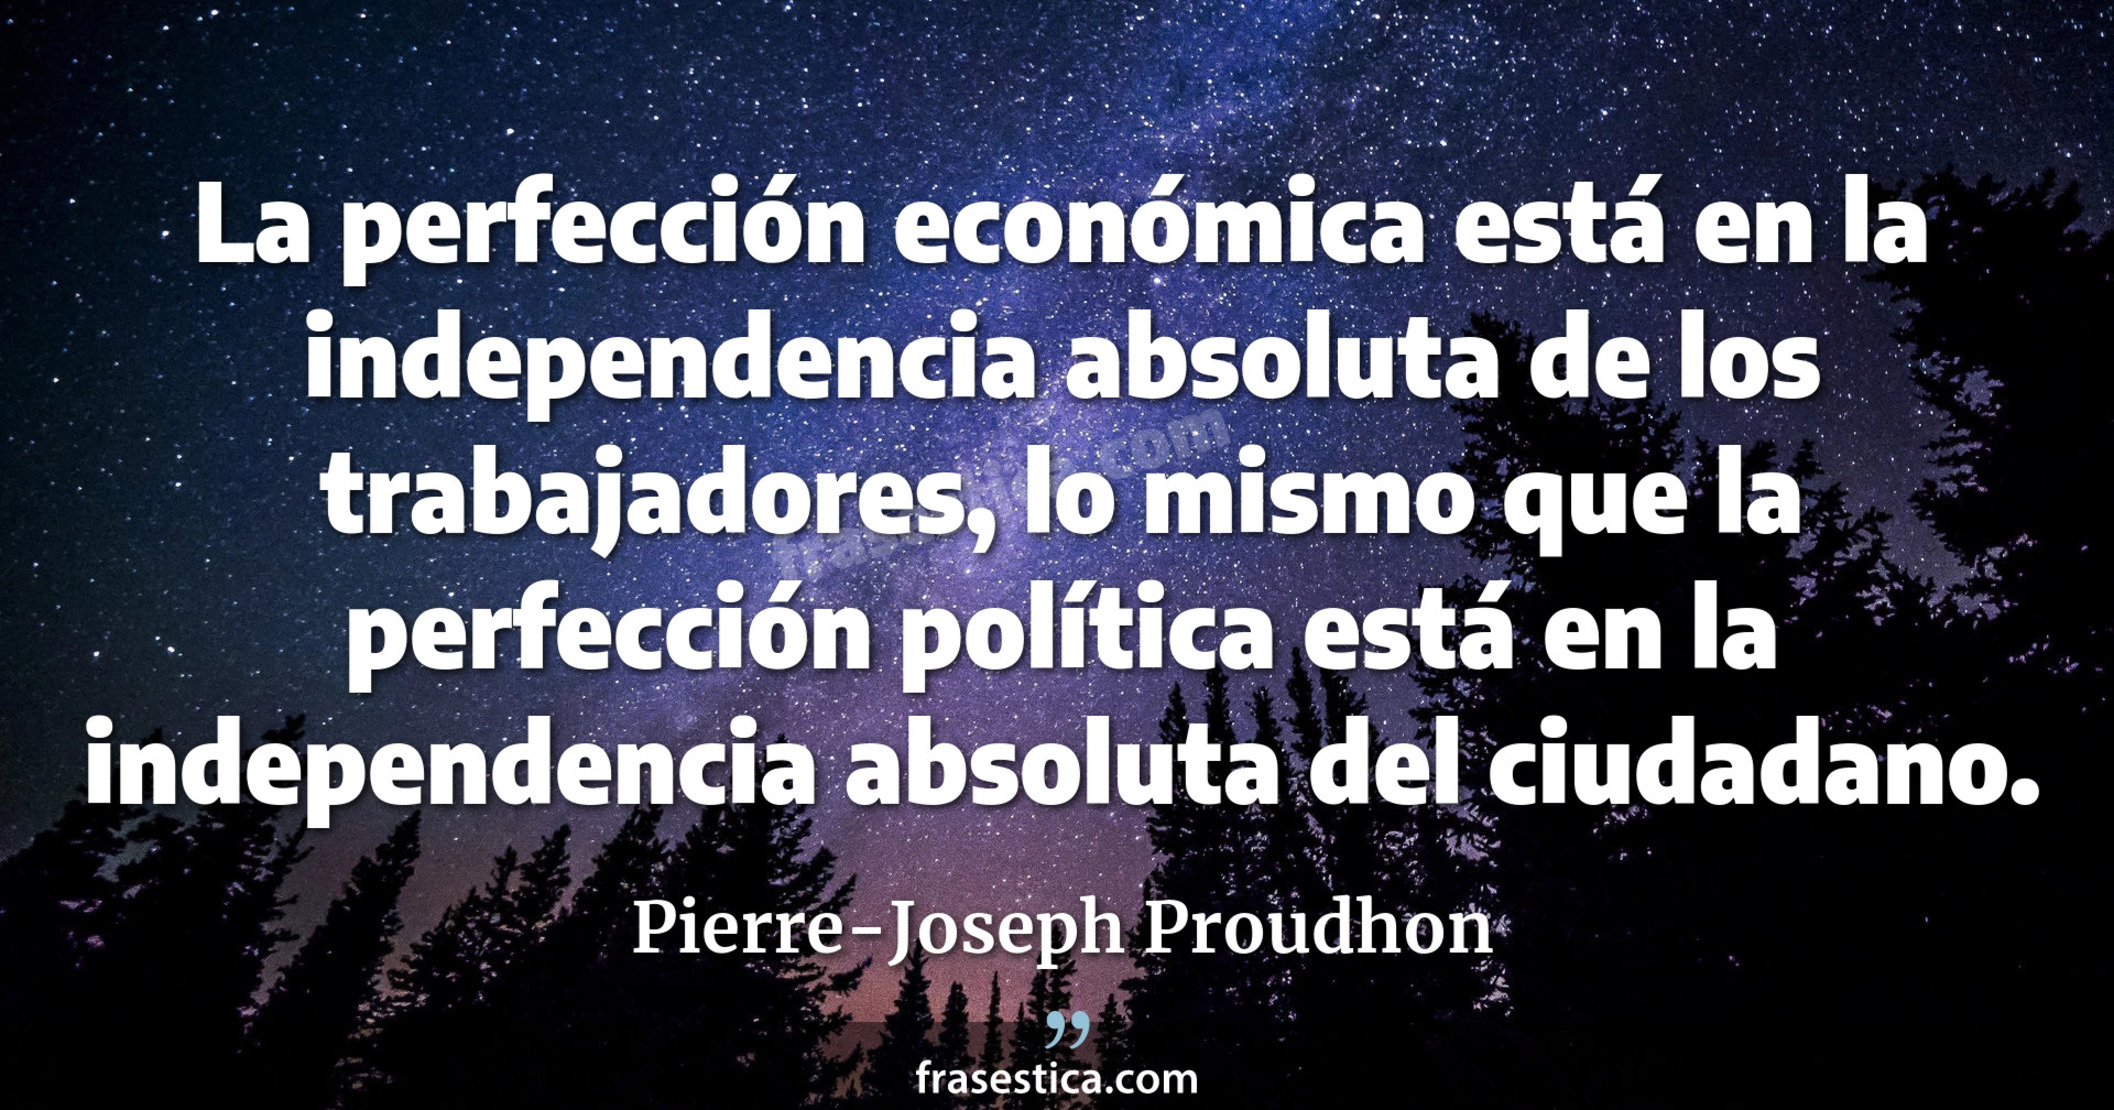 La perfección económica está en la independencia absoluta de los trabajadores, lo mismo que la perfección política está en la independencia absoluta del ciudadano. - Pierre-Joseph Proudhon